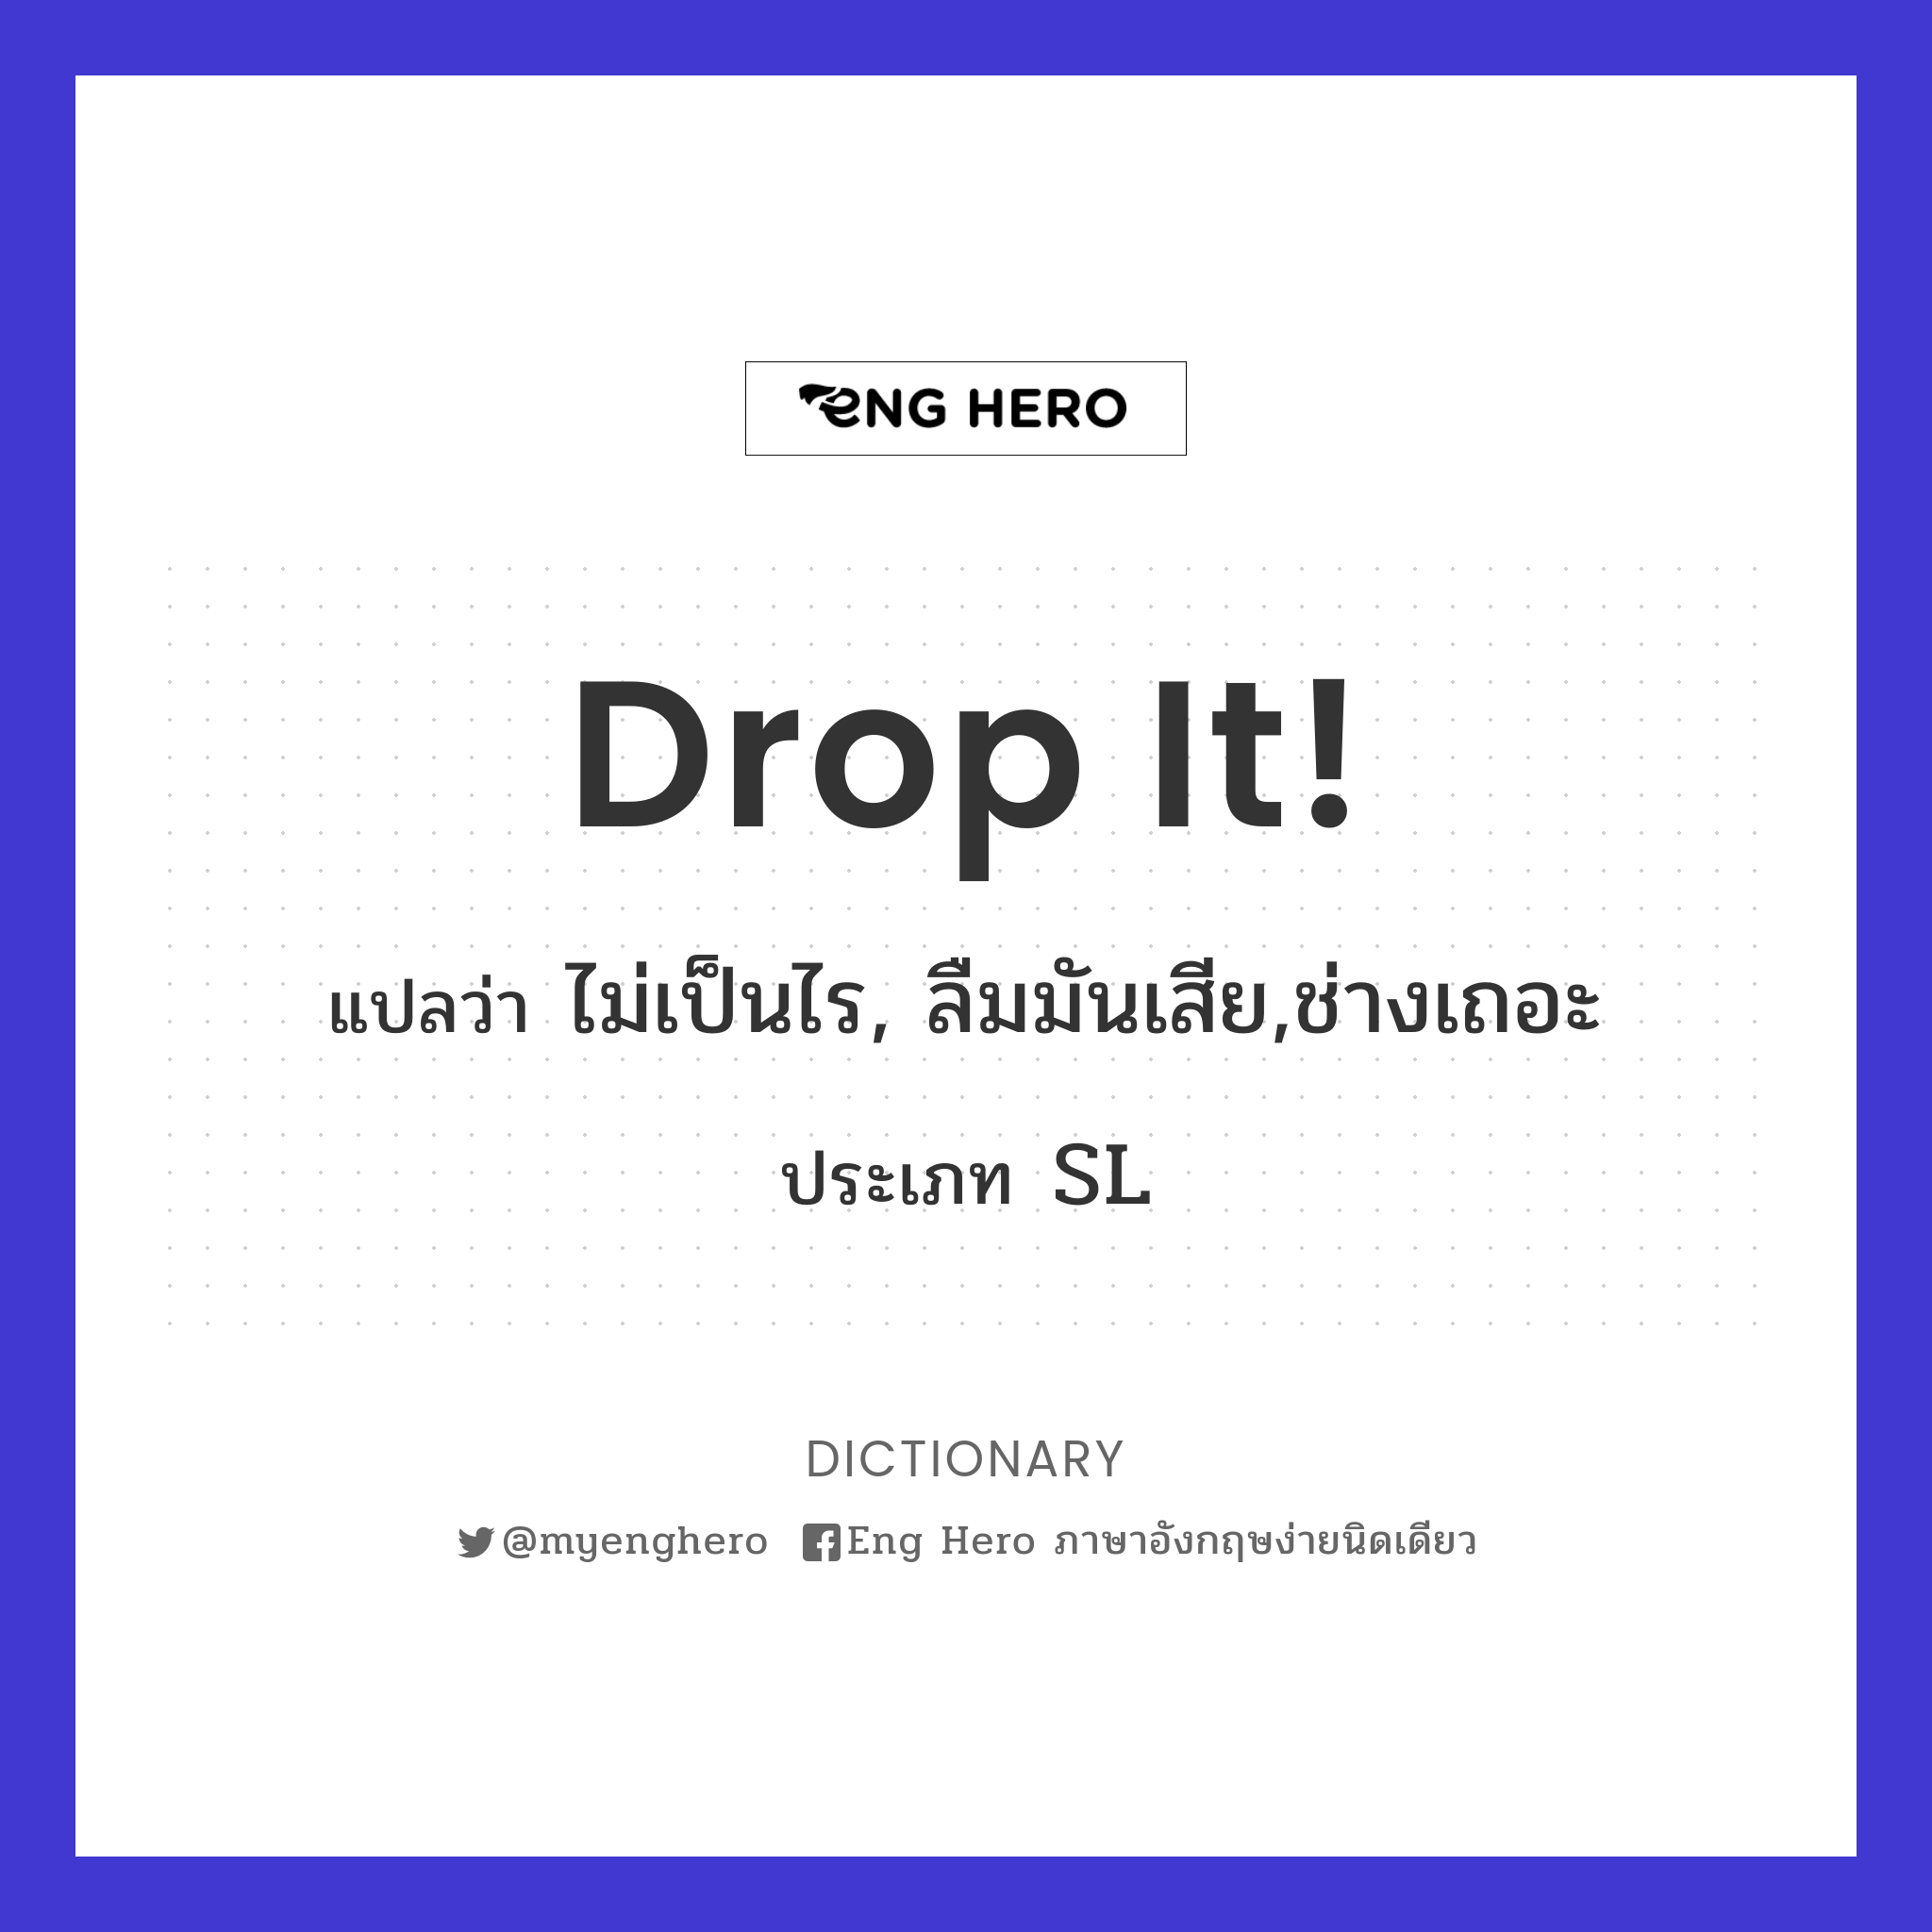 Drop it!